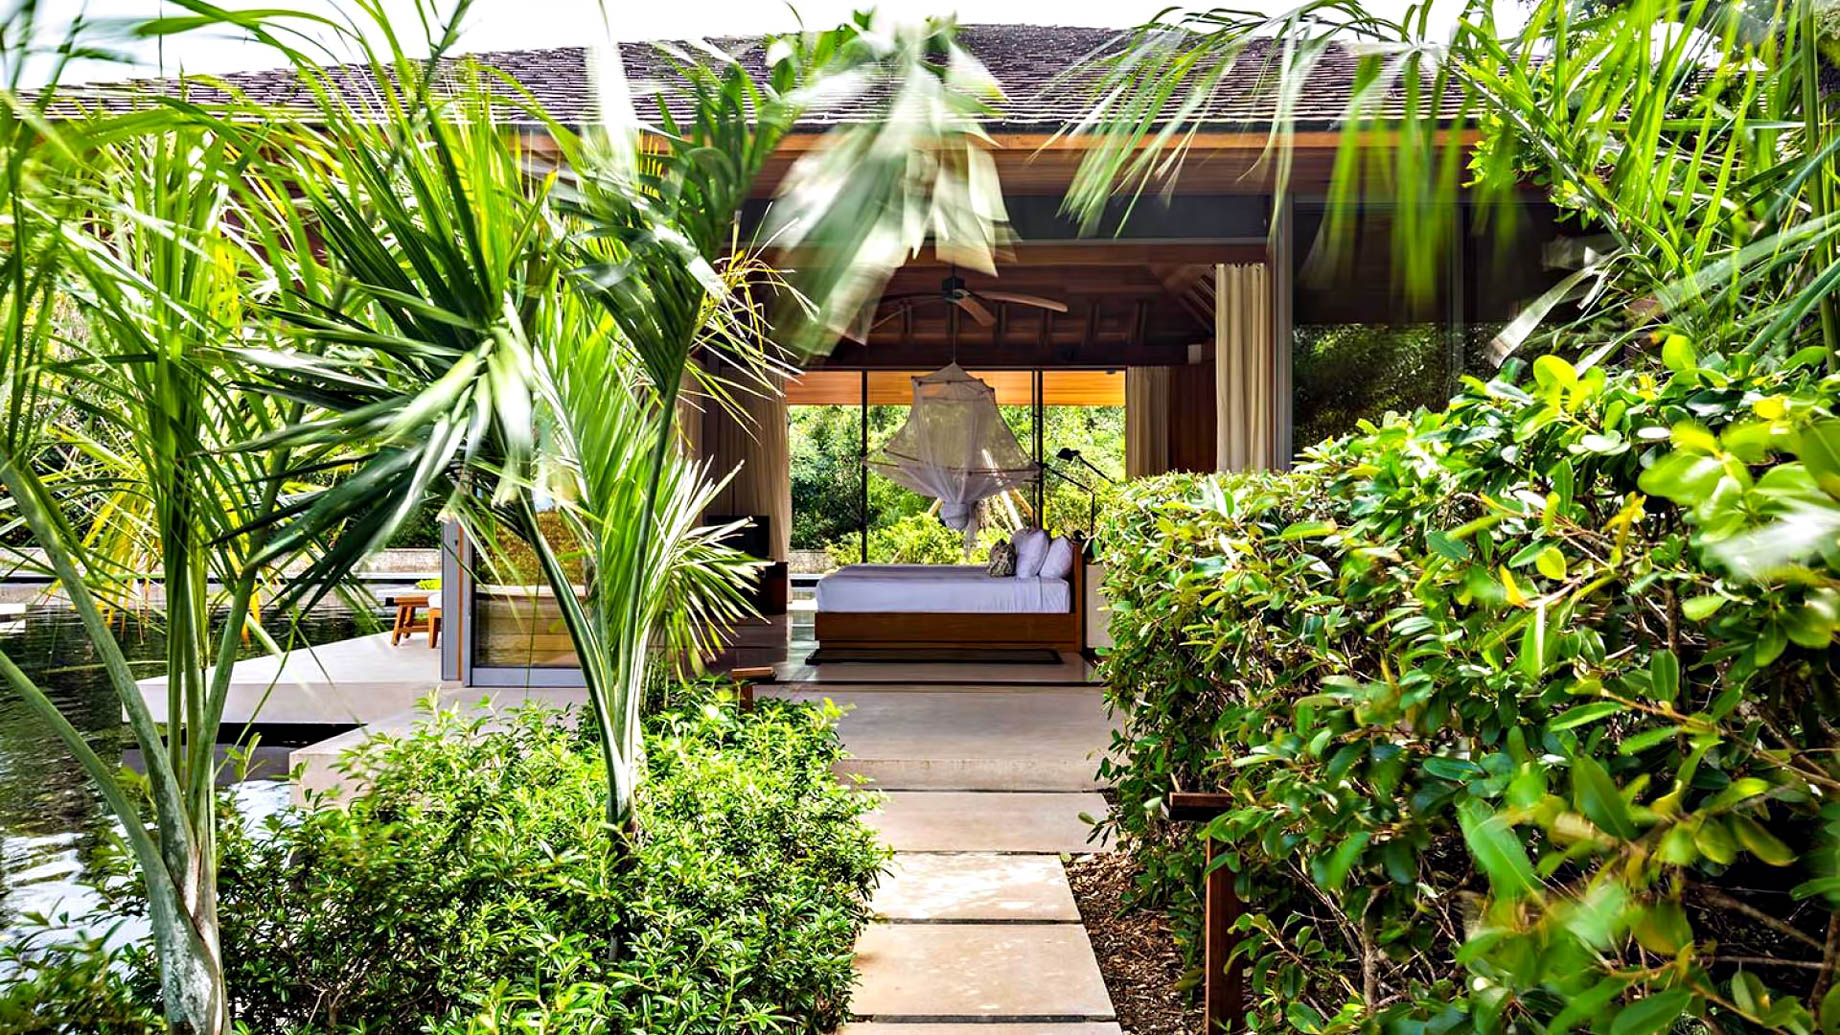 Amanyara Resort – Providenciales, Turks and Caicos Islands – 6 Bedroom Amanyara Villa Bedroom Exterior View